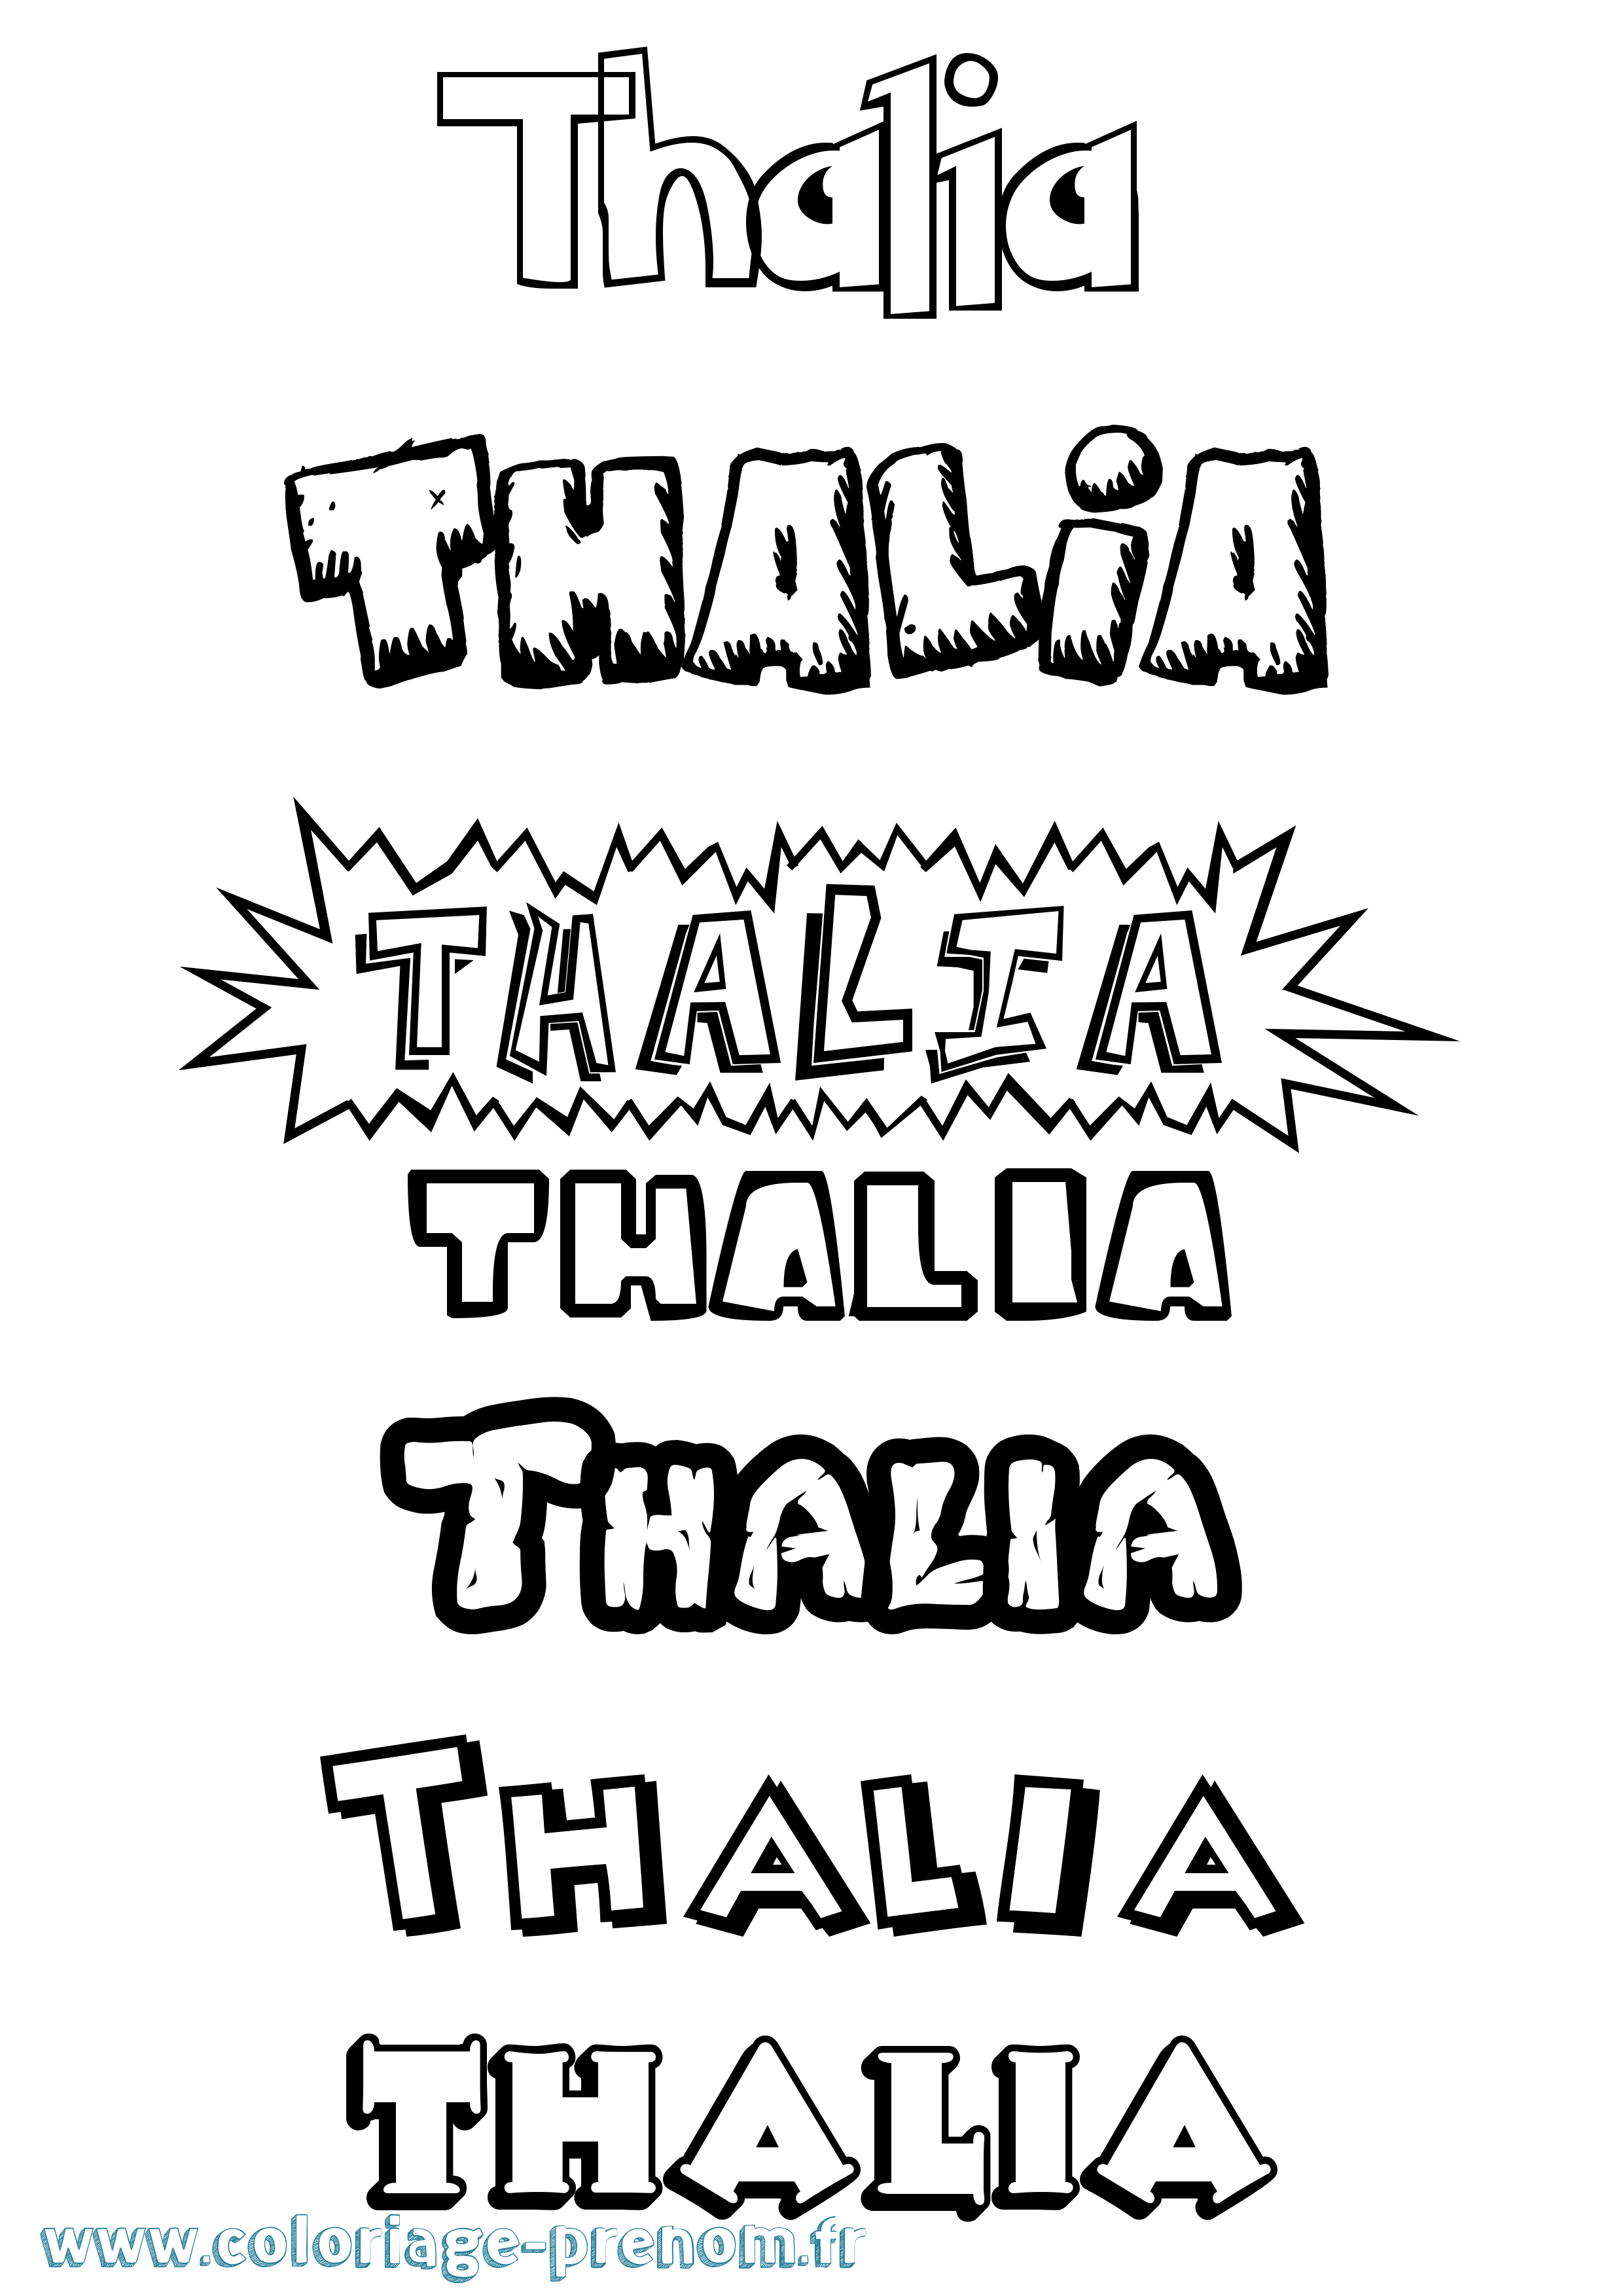 Coloriage prénom Thalia